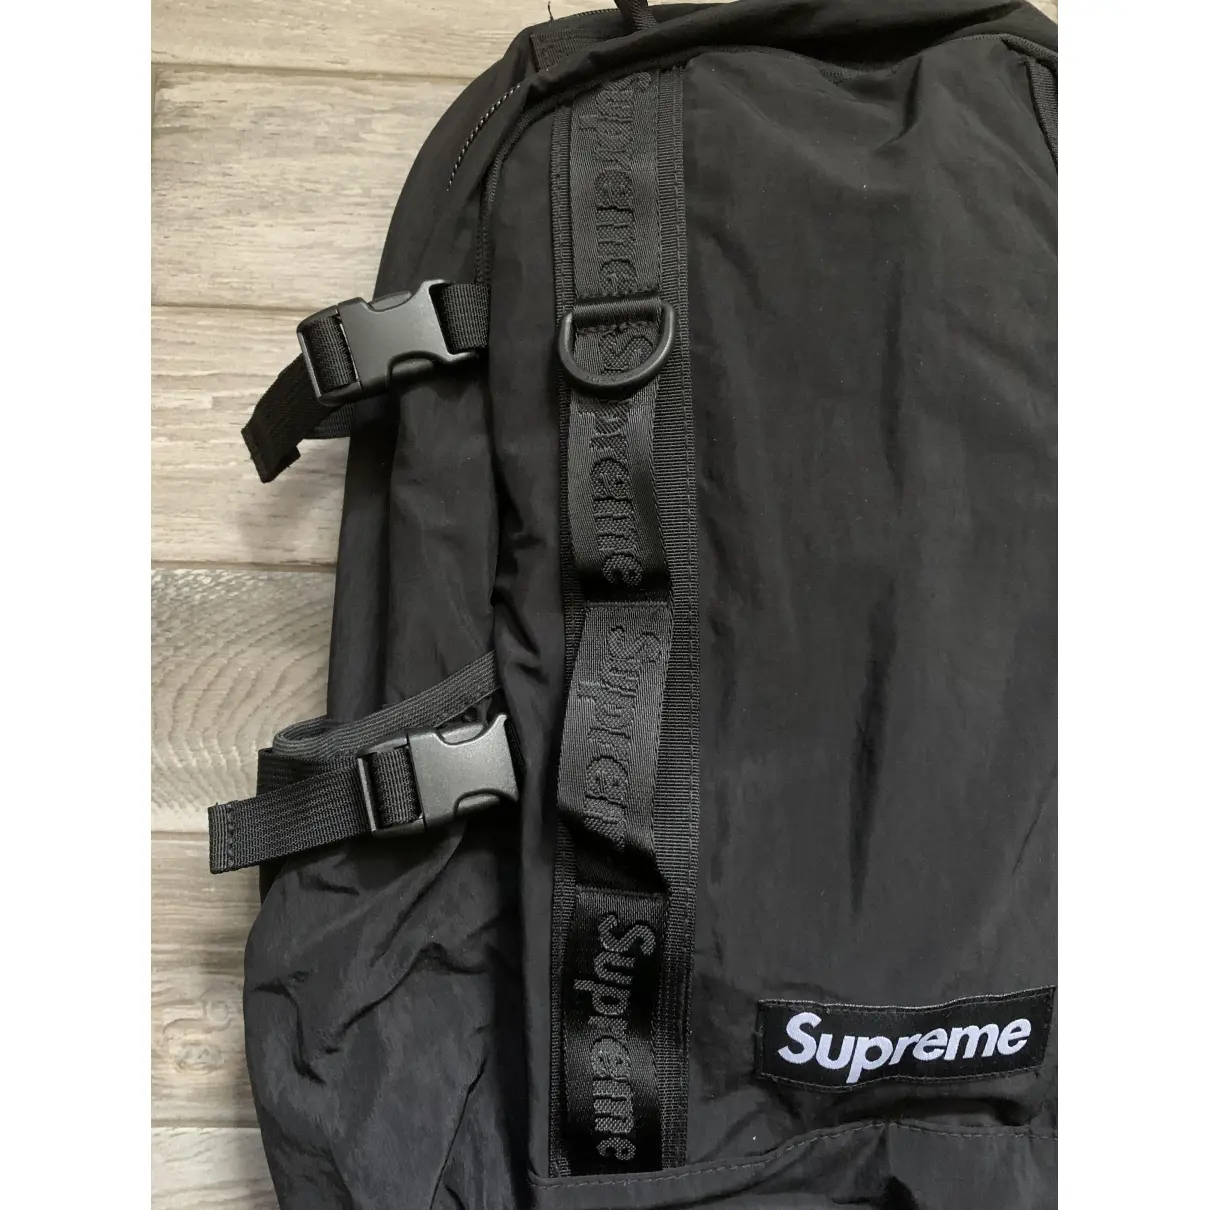 Buy Supreme Bag online